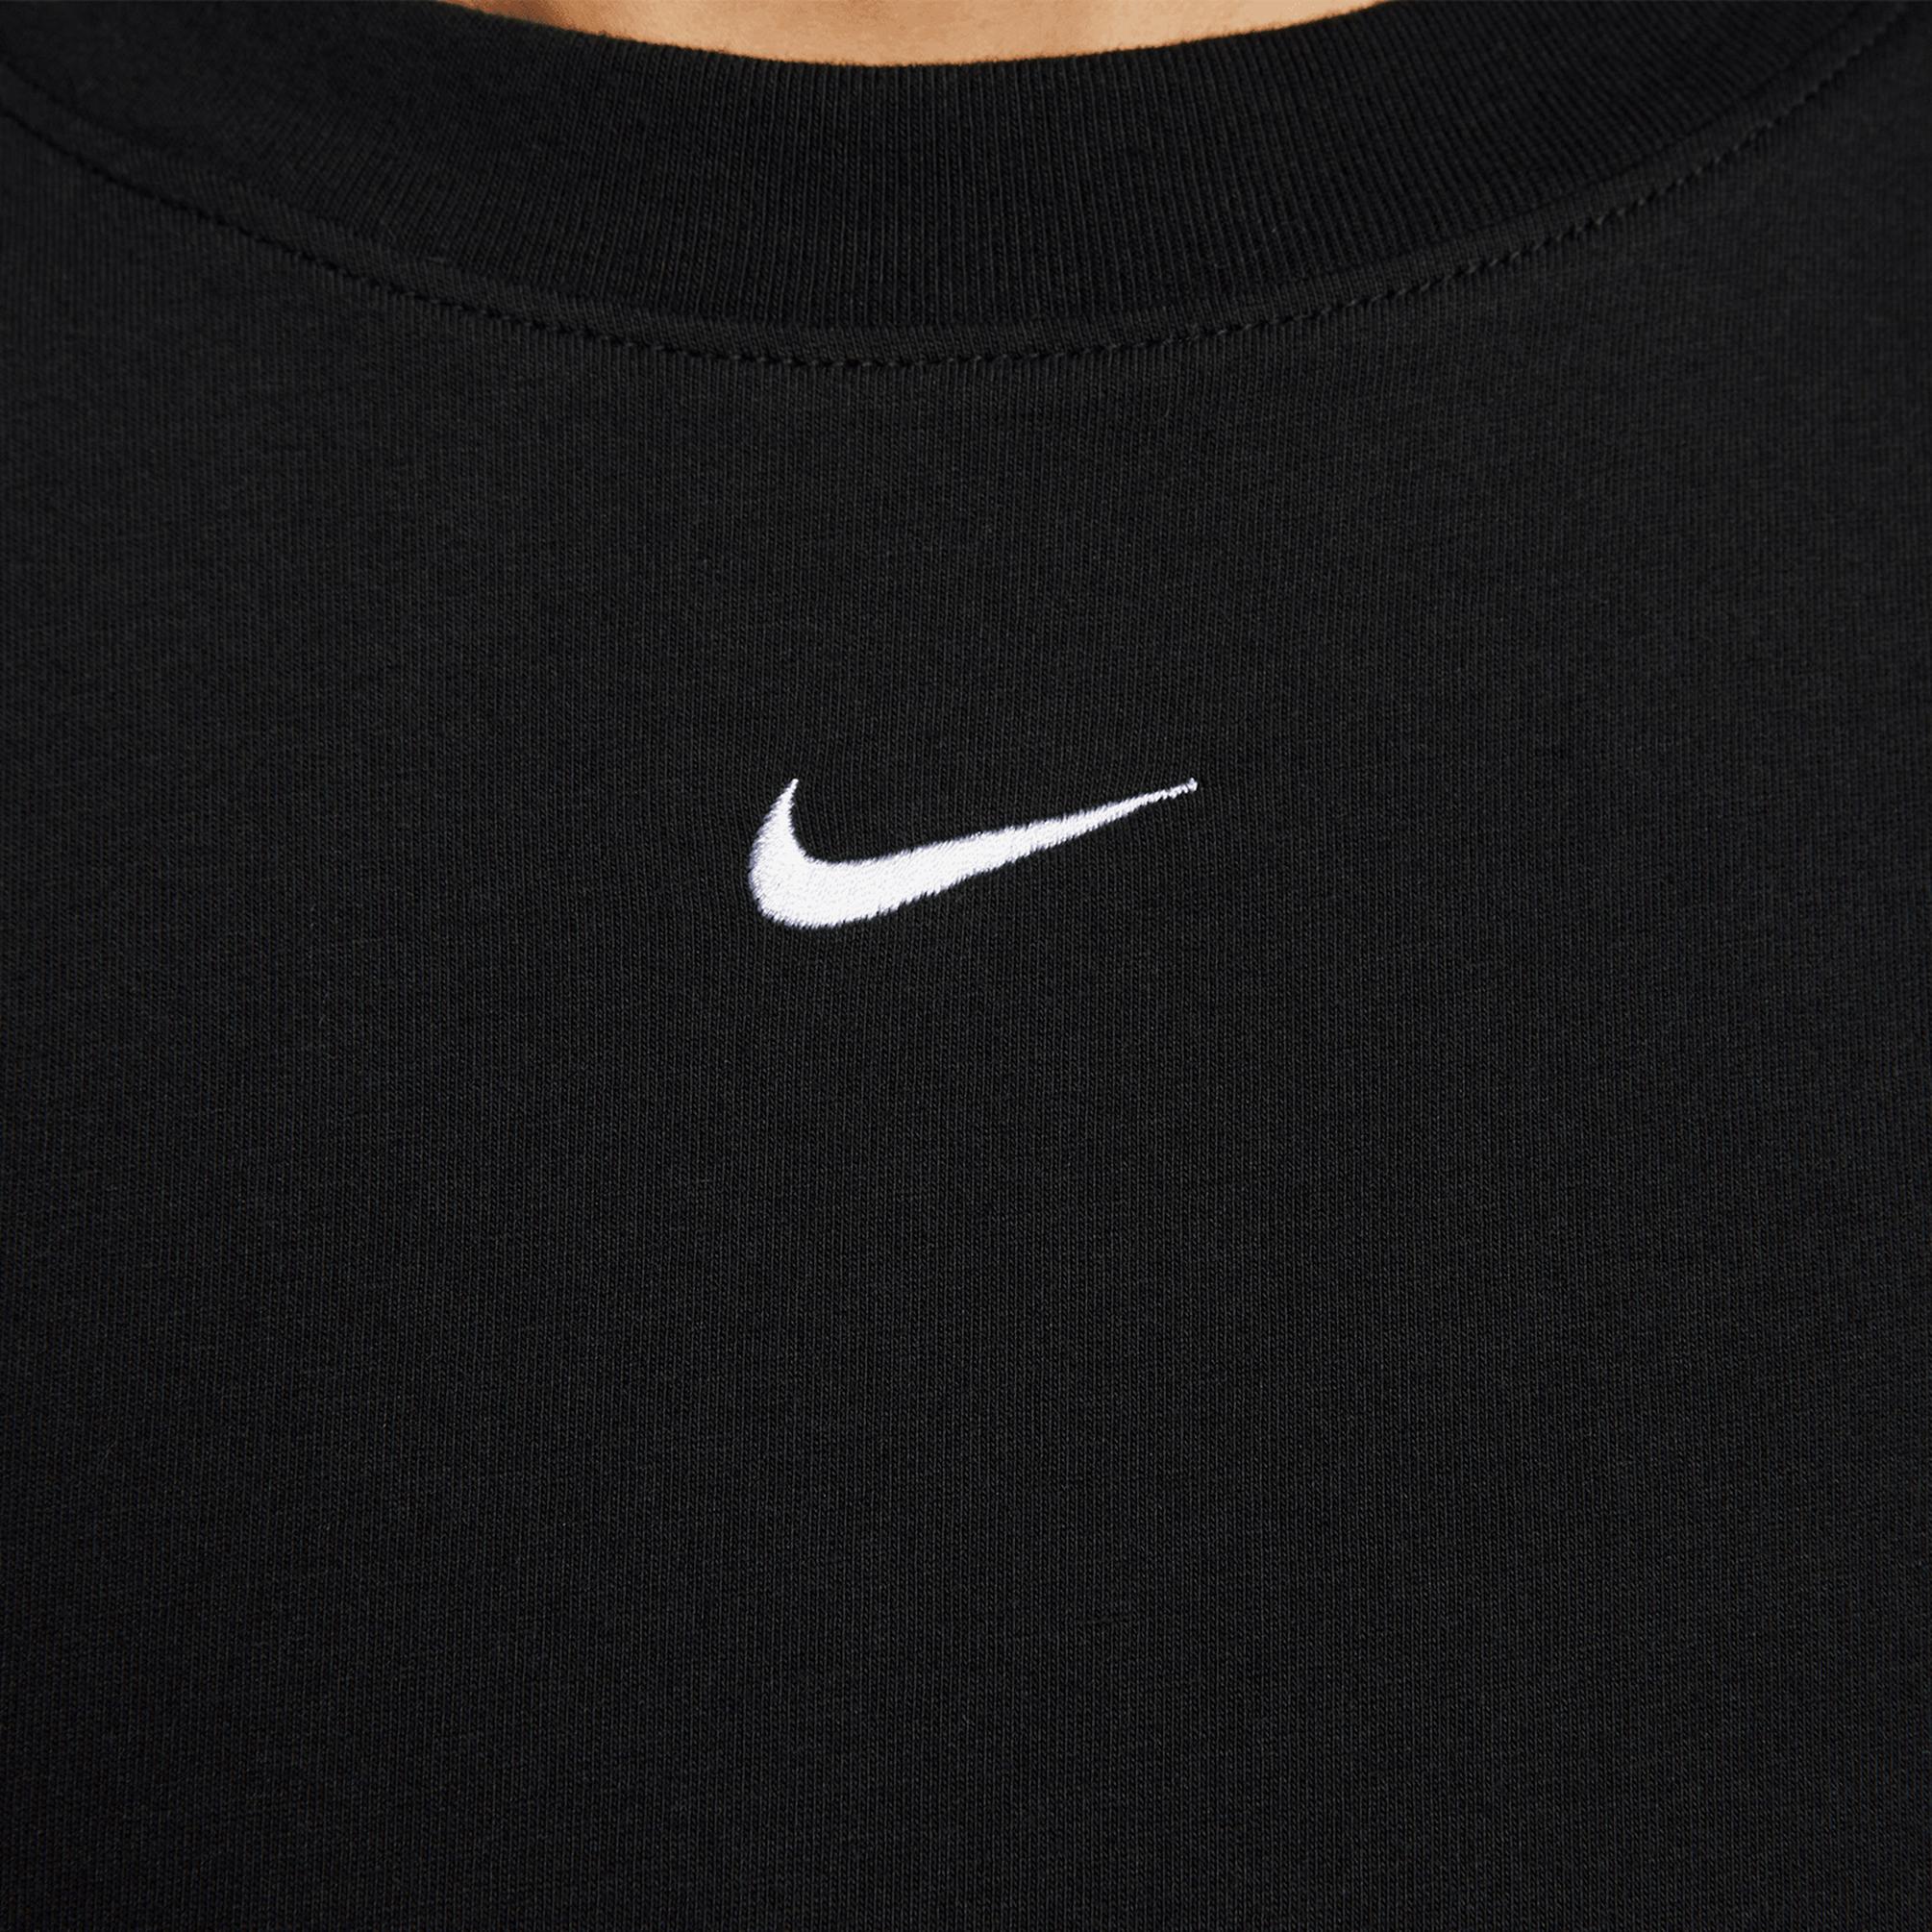  Nike Sportswear Essential Kadın Siyah Elbise